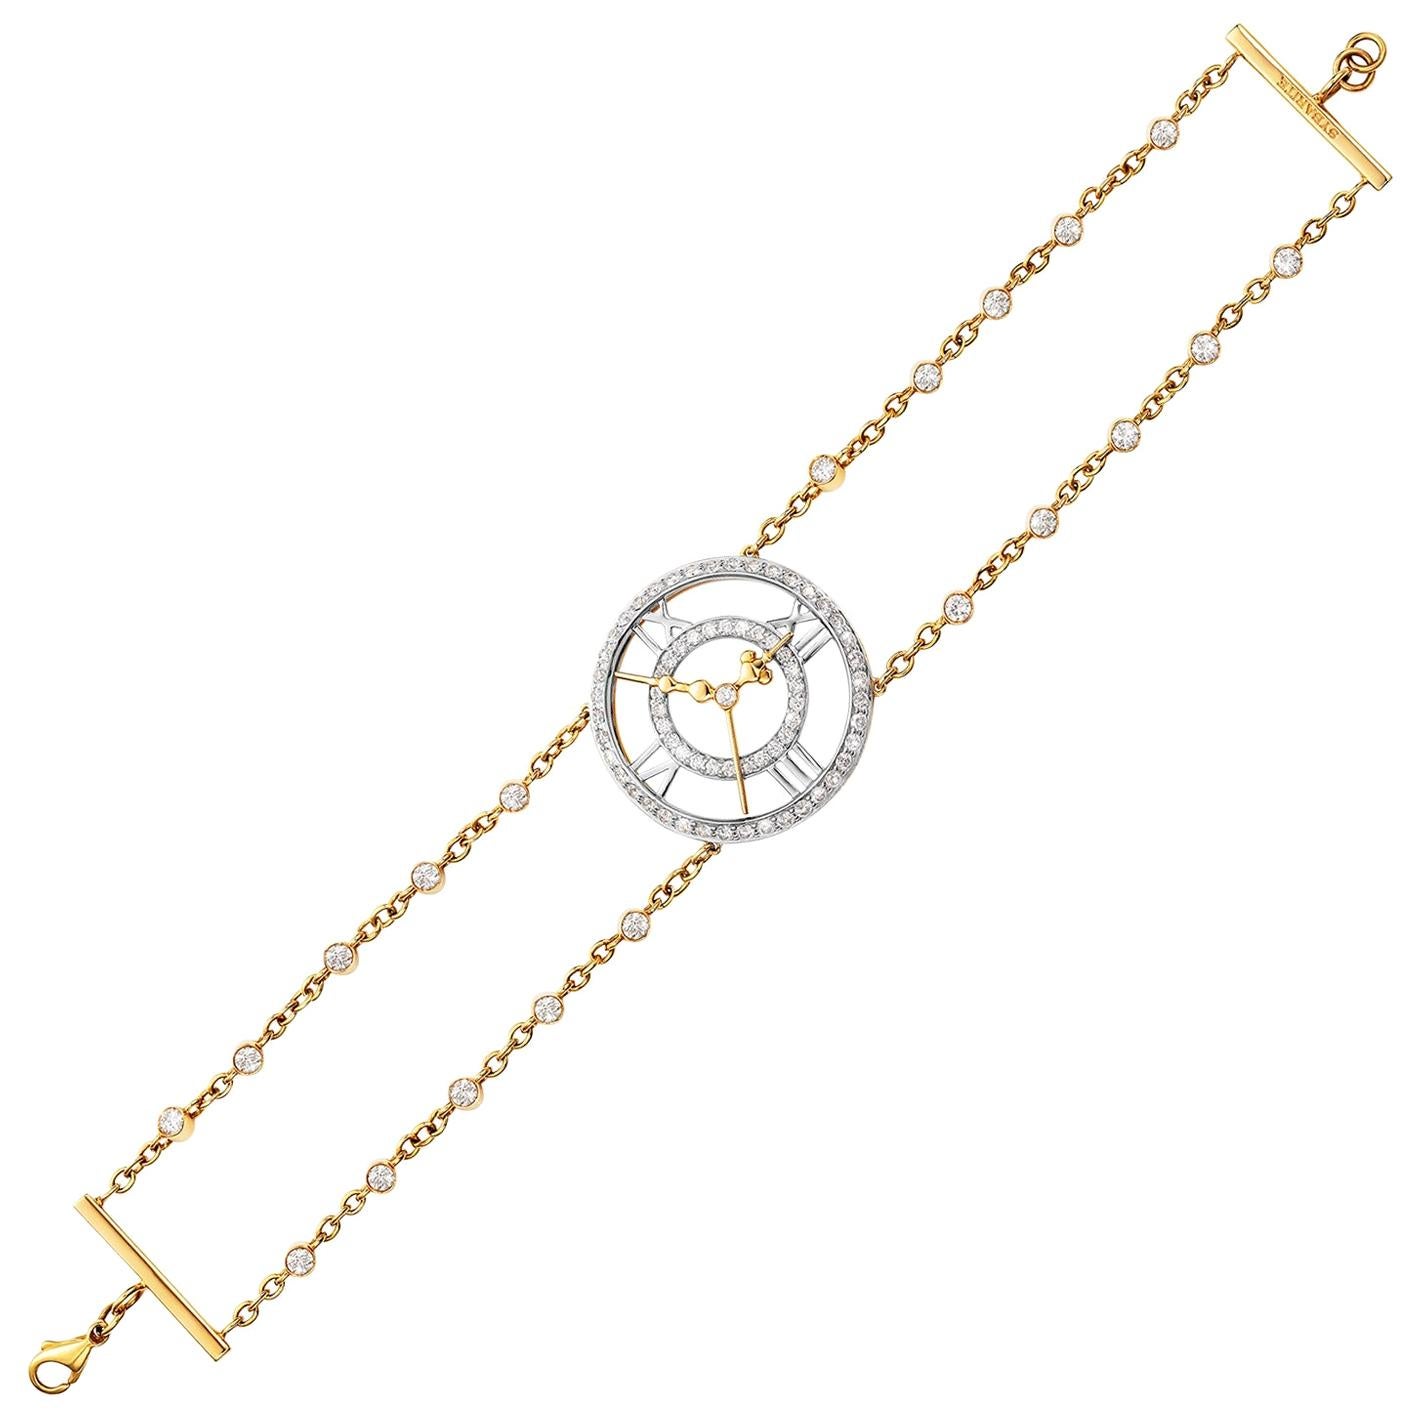 Sybarite Clockwork Bracelet For Sale